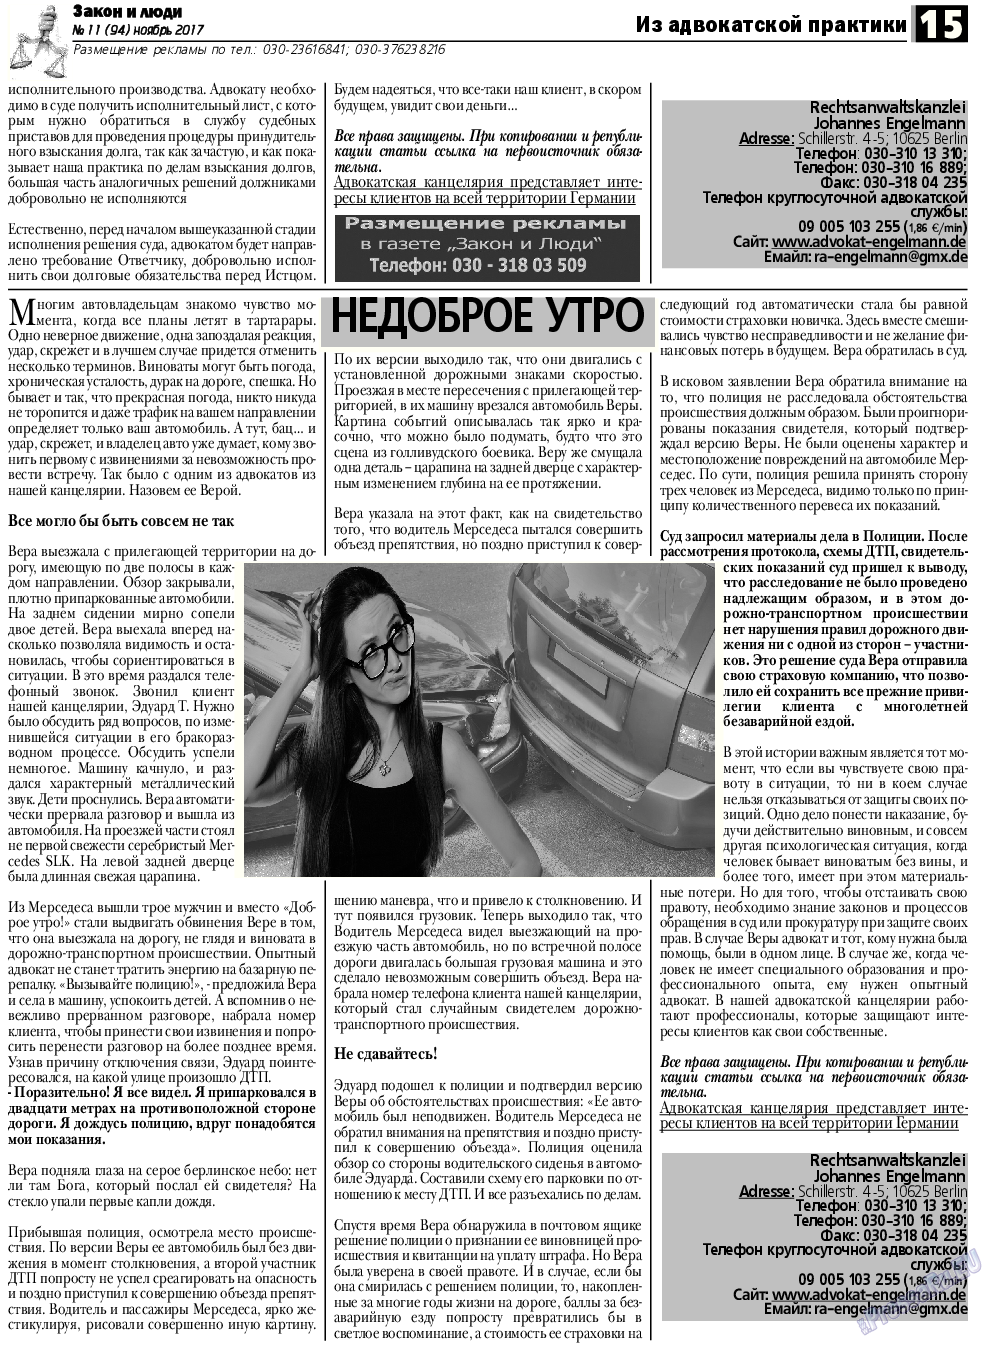 Закон и люди, газета. 2017 №11 стр.15